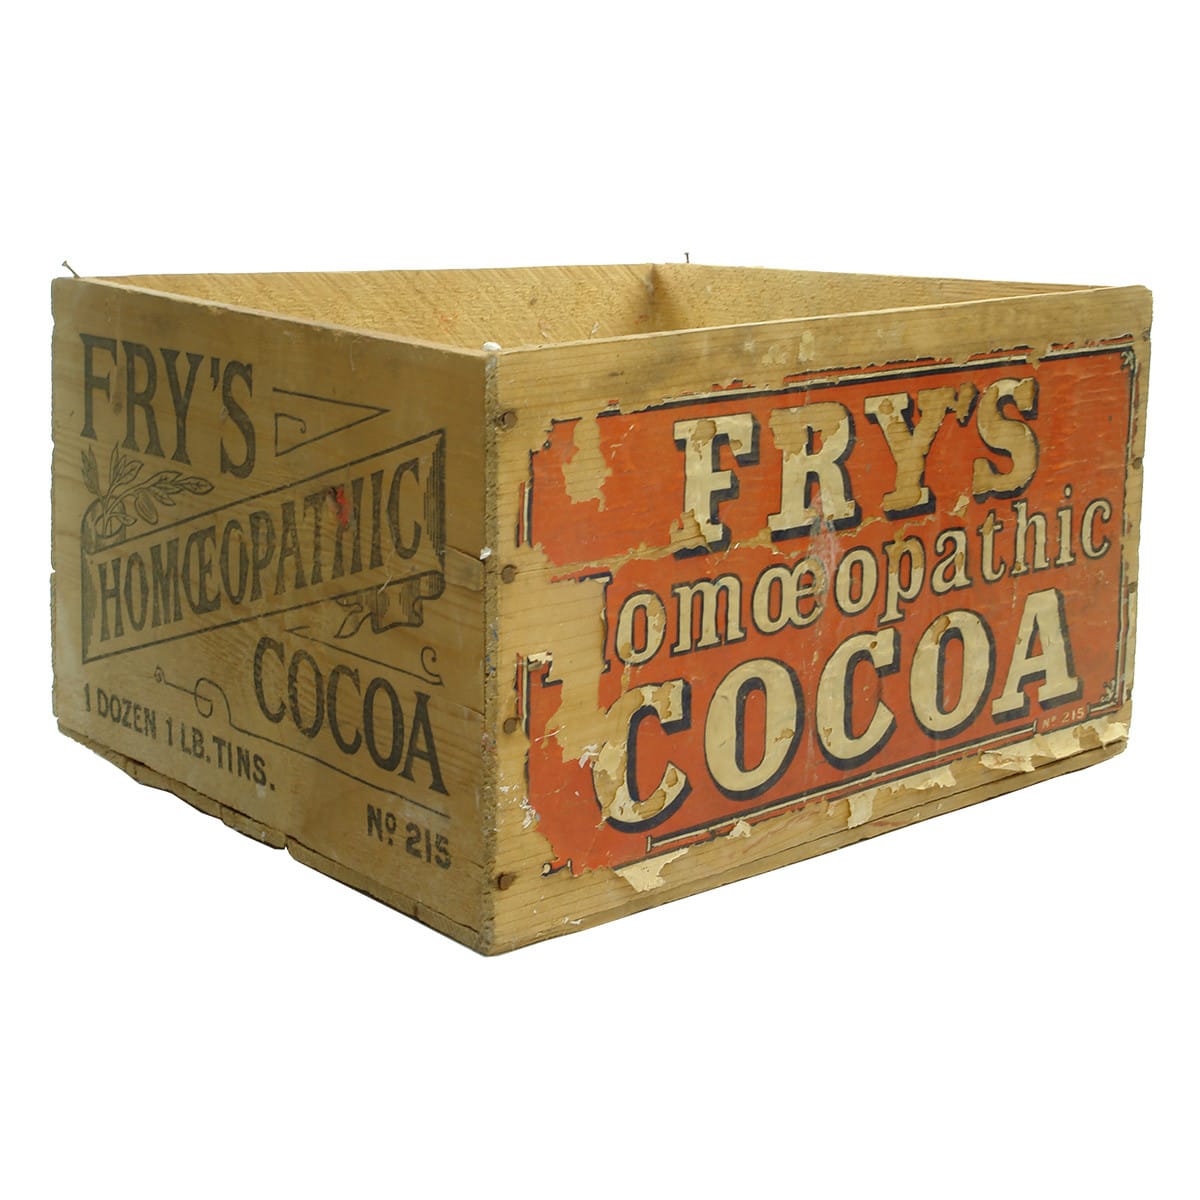 Box. Fry's Homeopathic Cocoa, 1 Dozen 1 Lb Tins.